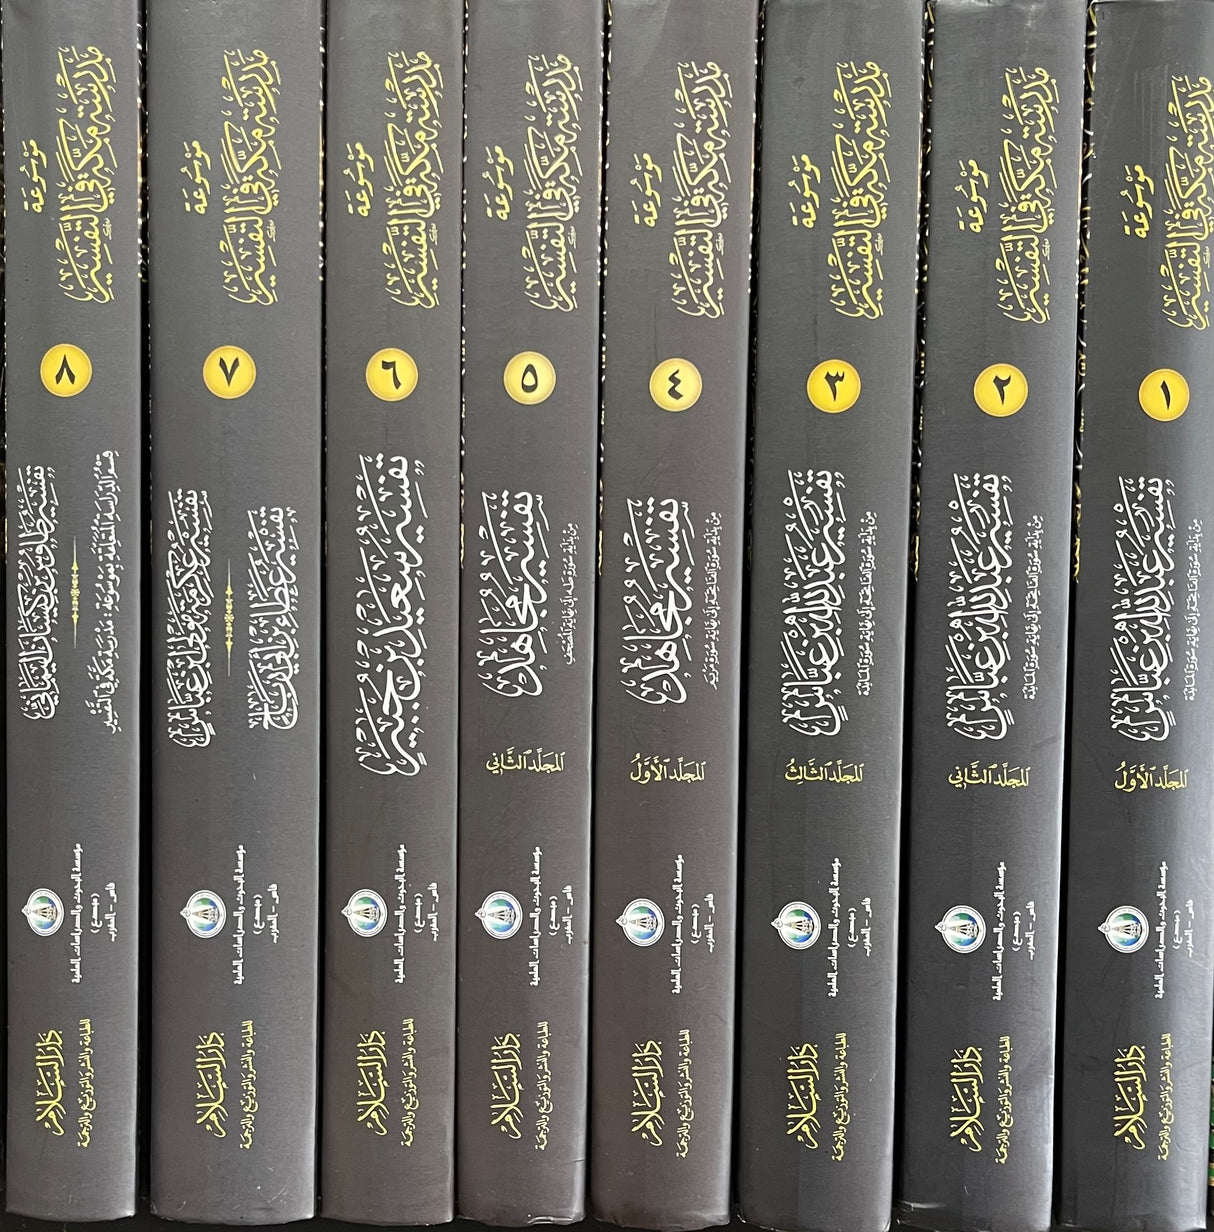 موسوعة مدرسة مكة في التفسير Mawsua Madrasat Makkah Fit Tafsir (8 Volume Set)